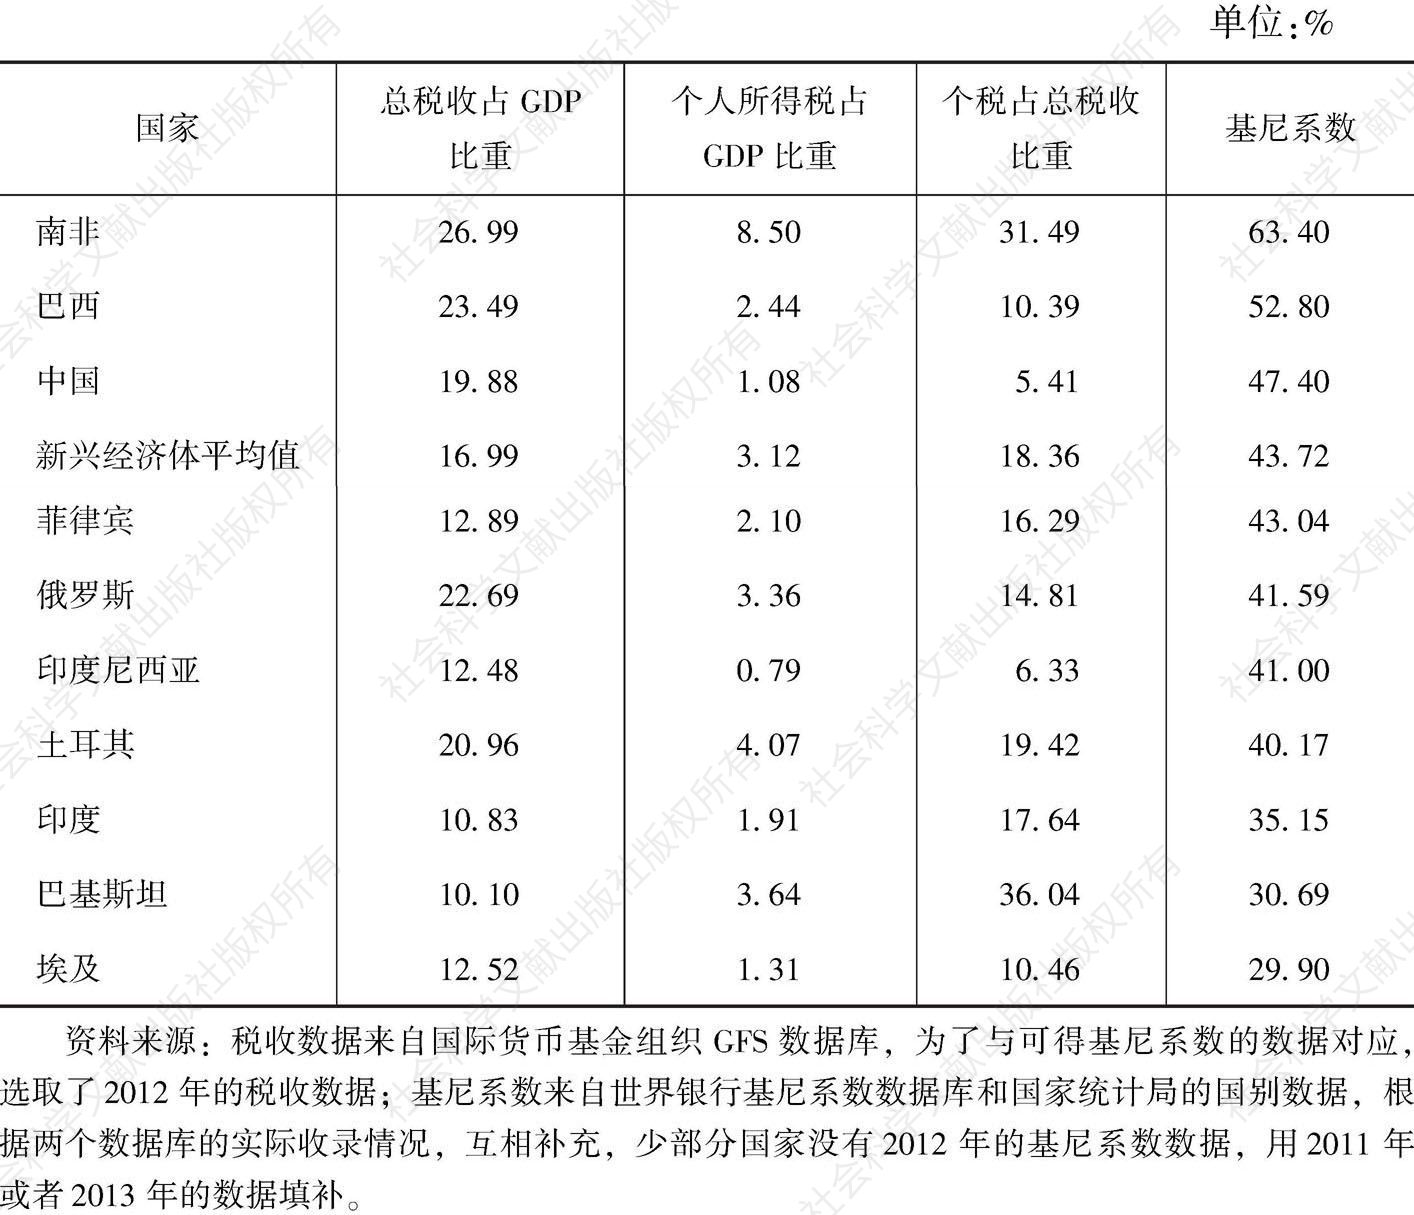 表10-6 2012年新兴经济体的个人所得税